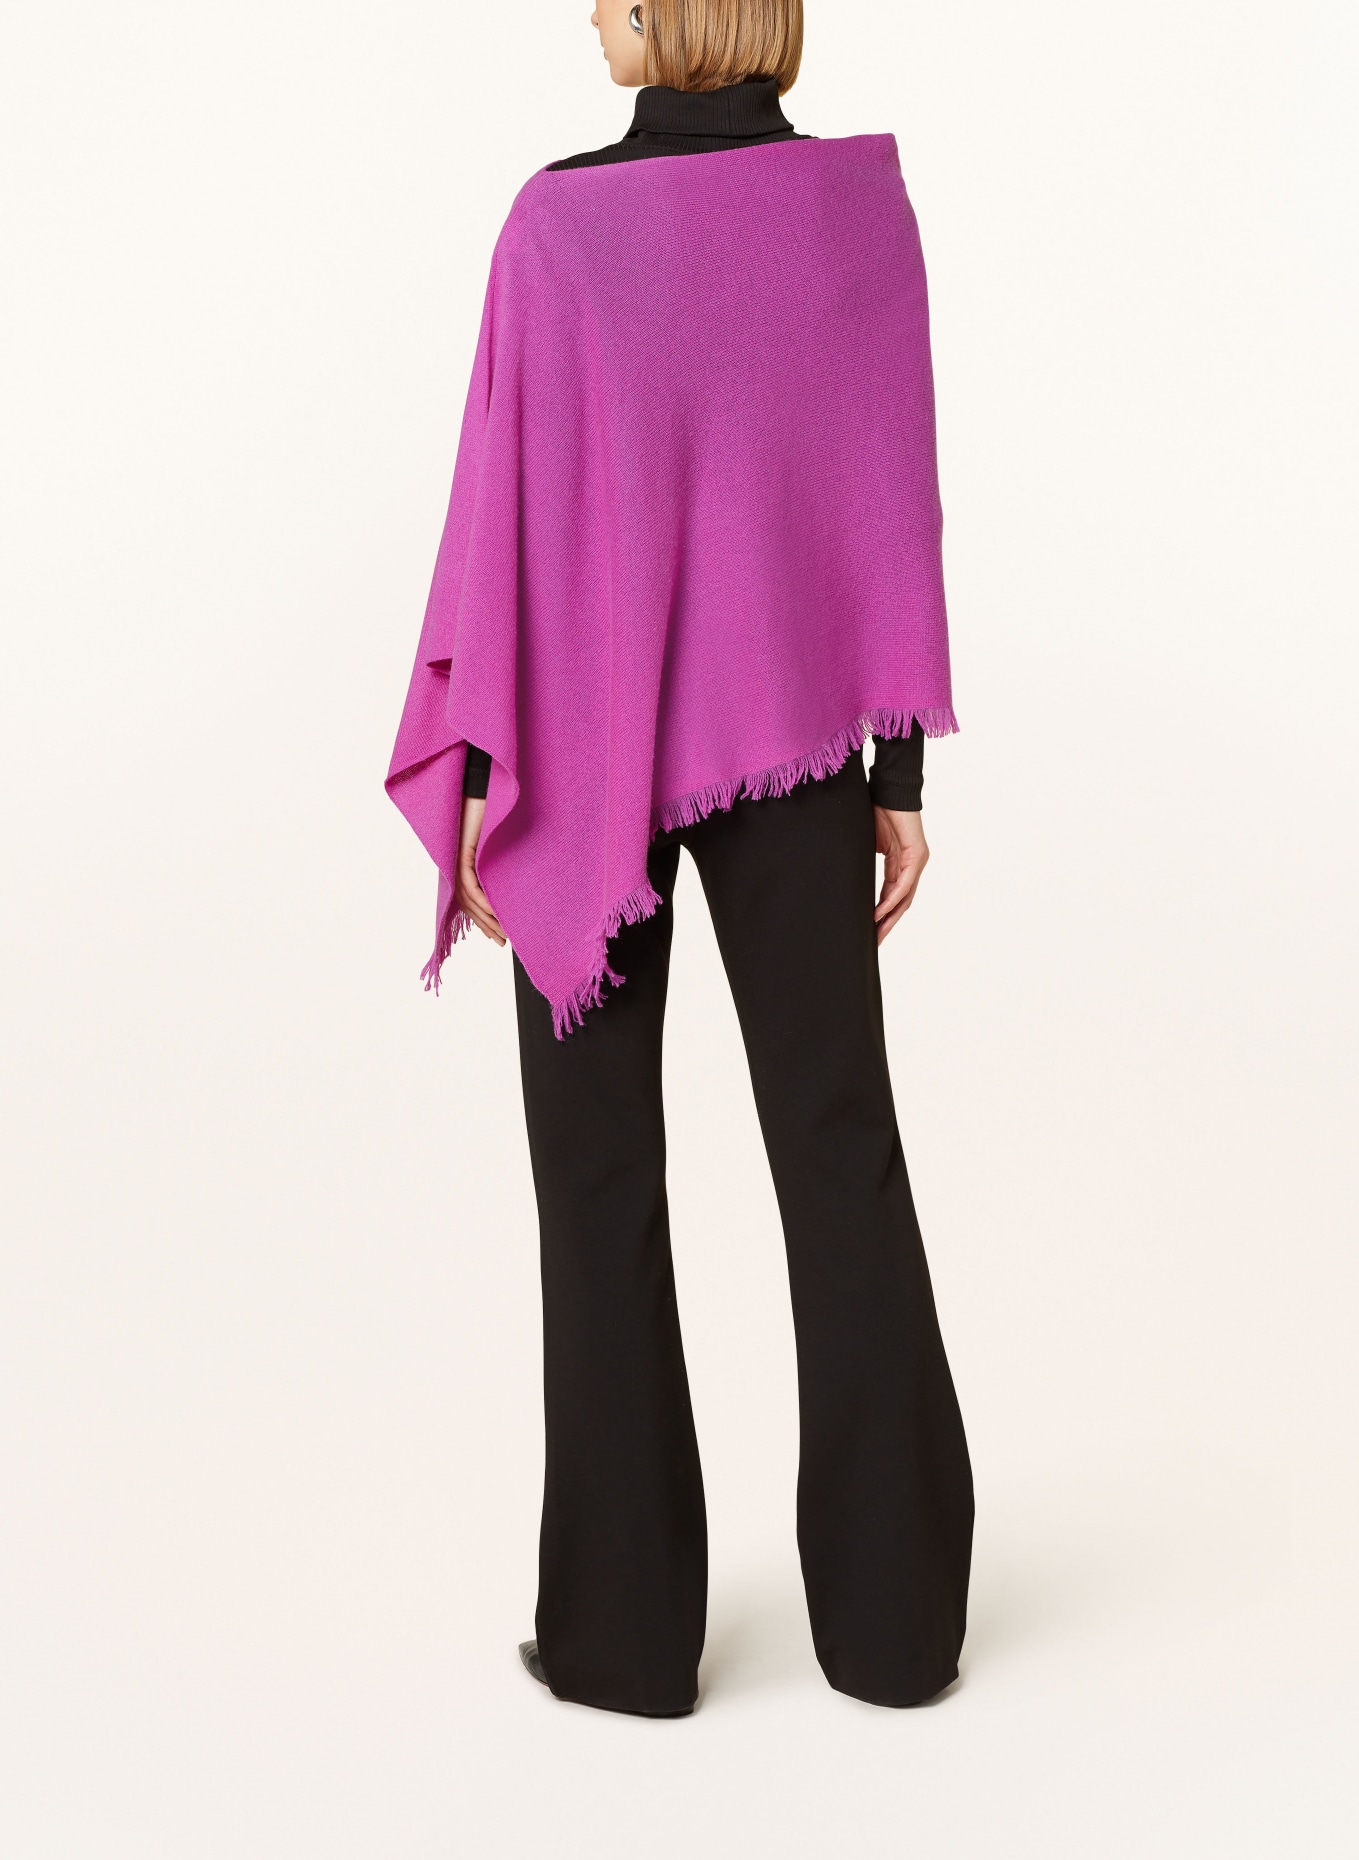 REPEAT Cashmere poncho, Color: FUCHSIA (Image 3)